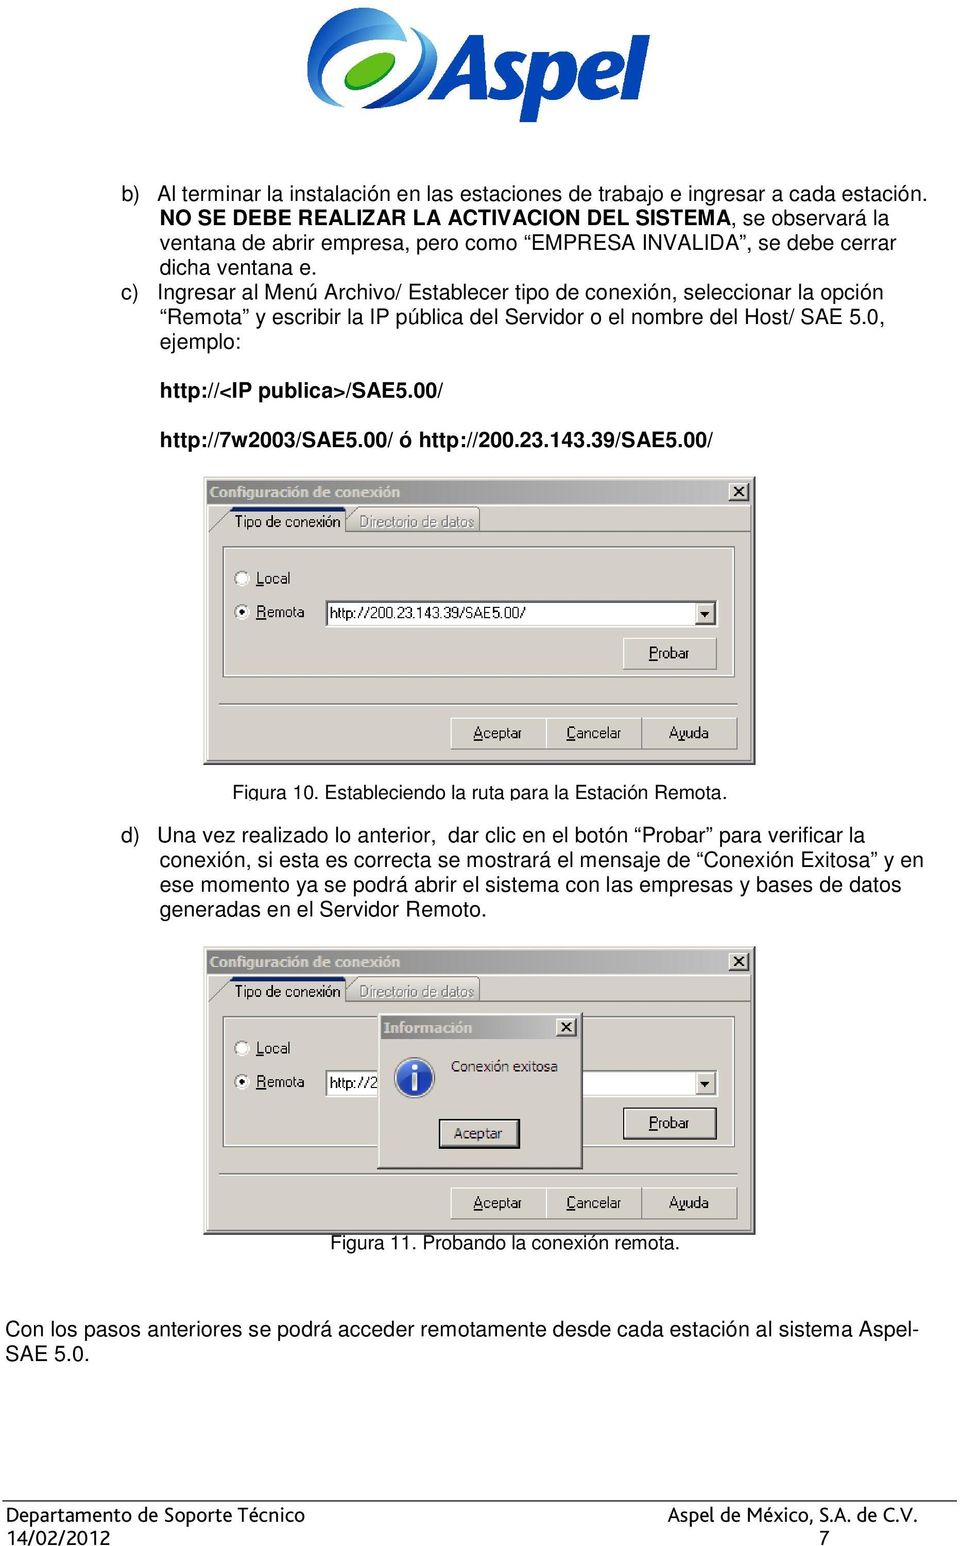 c) Ingresar al Menú Archivo/ Establecer tipo de conexión, seleccionar la opción Remota y escribir la IP pública del Servidor o el nombre del Host/ SAE 5.0, ejemplo: http://<ip publica>/sae5.